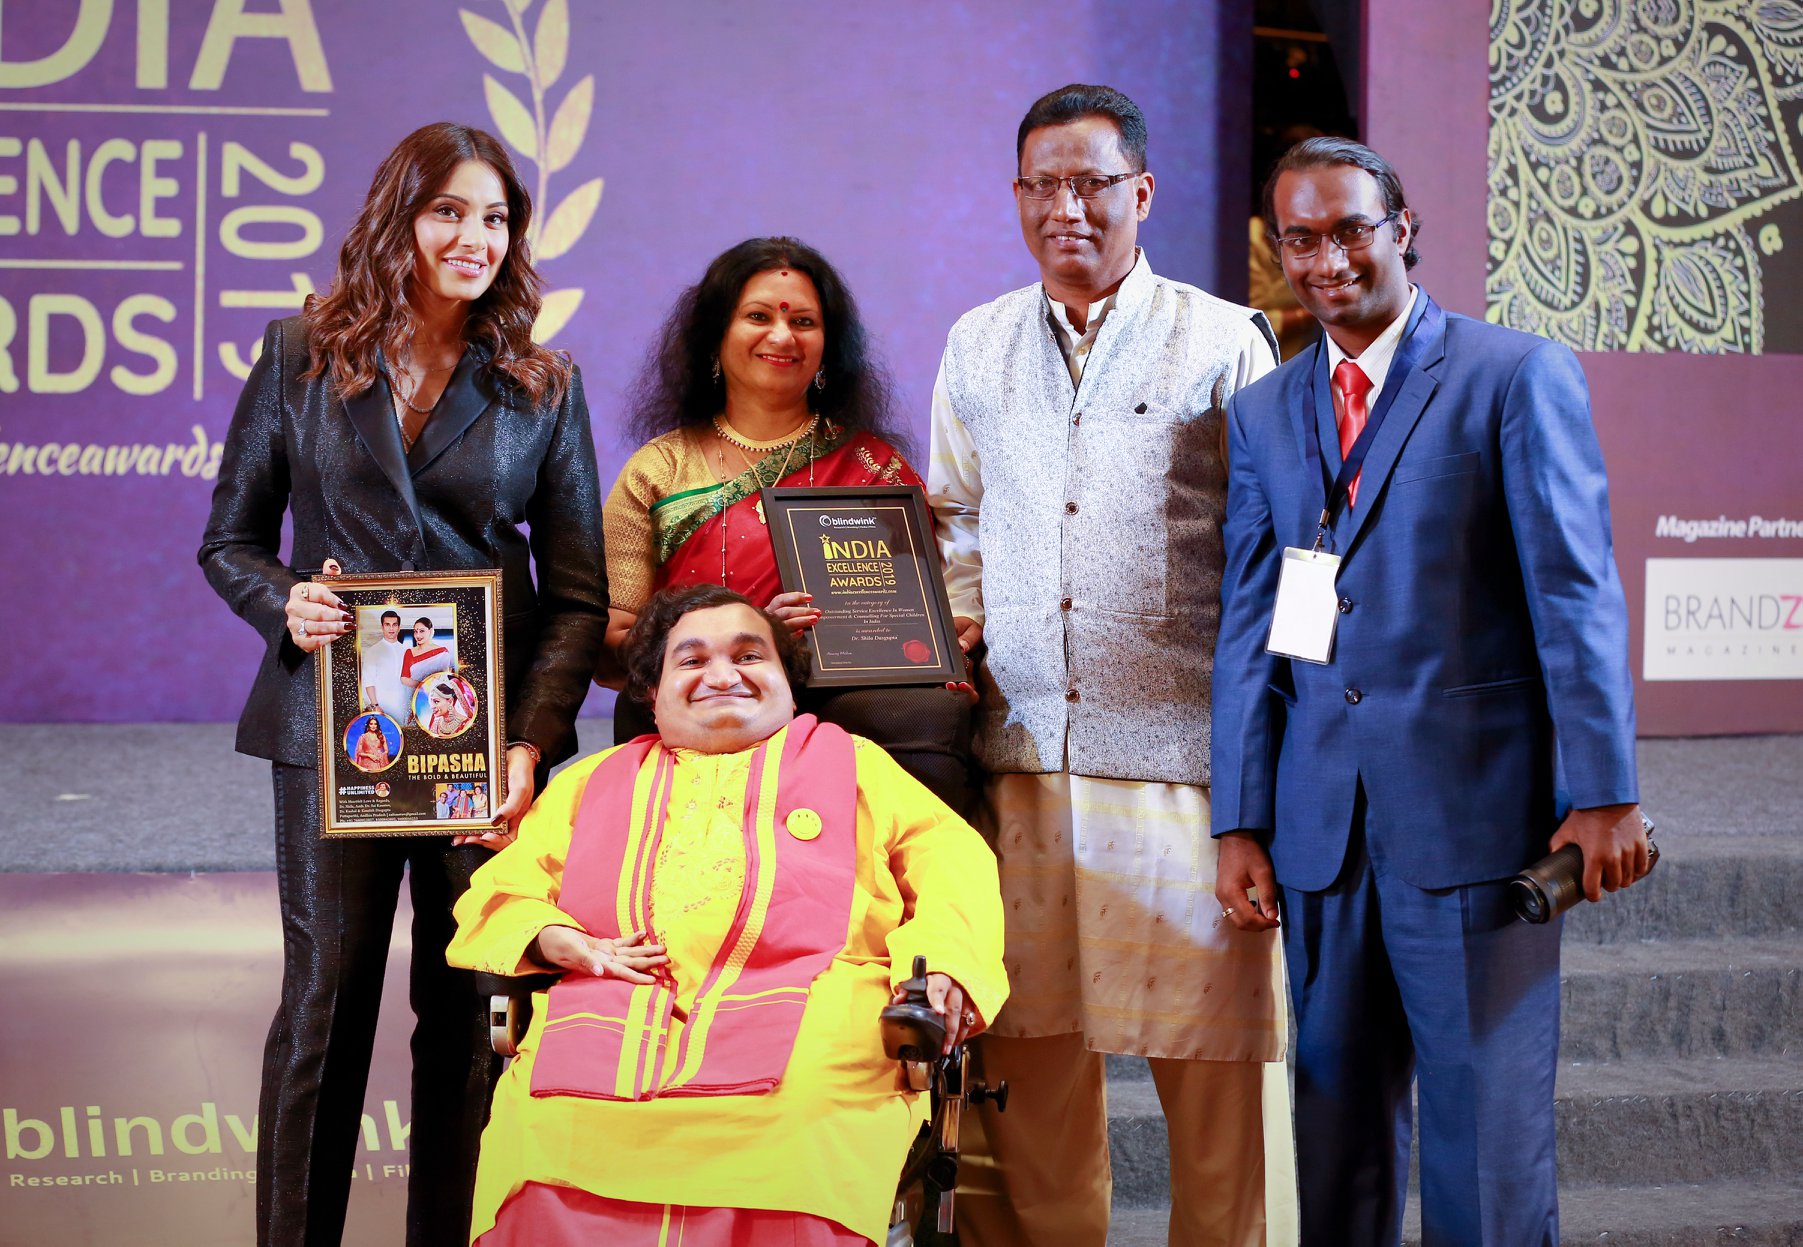 Dr. Sai Kaustuv Dasgupta, A Wheelchair Warrior With Brittle Bone Disease Makes It To D-30 Disability Impact List- 2021